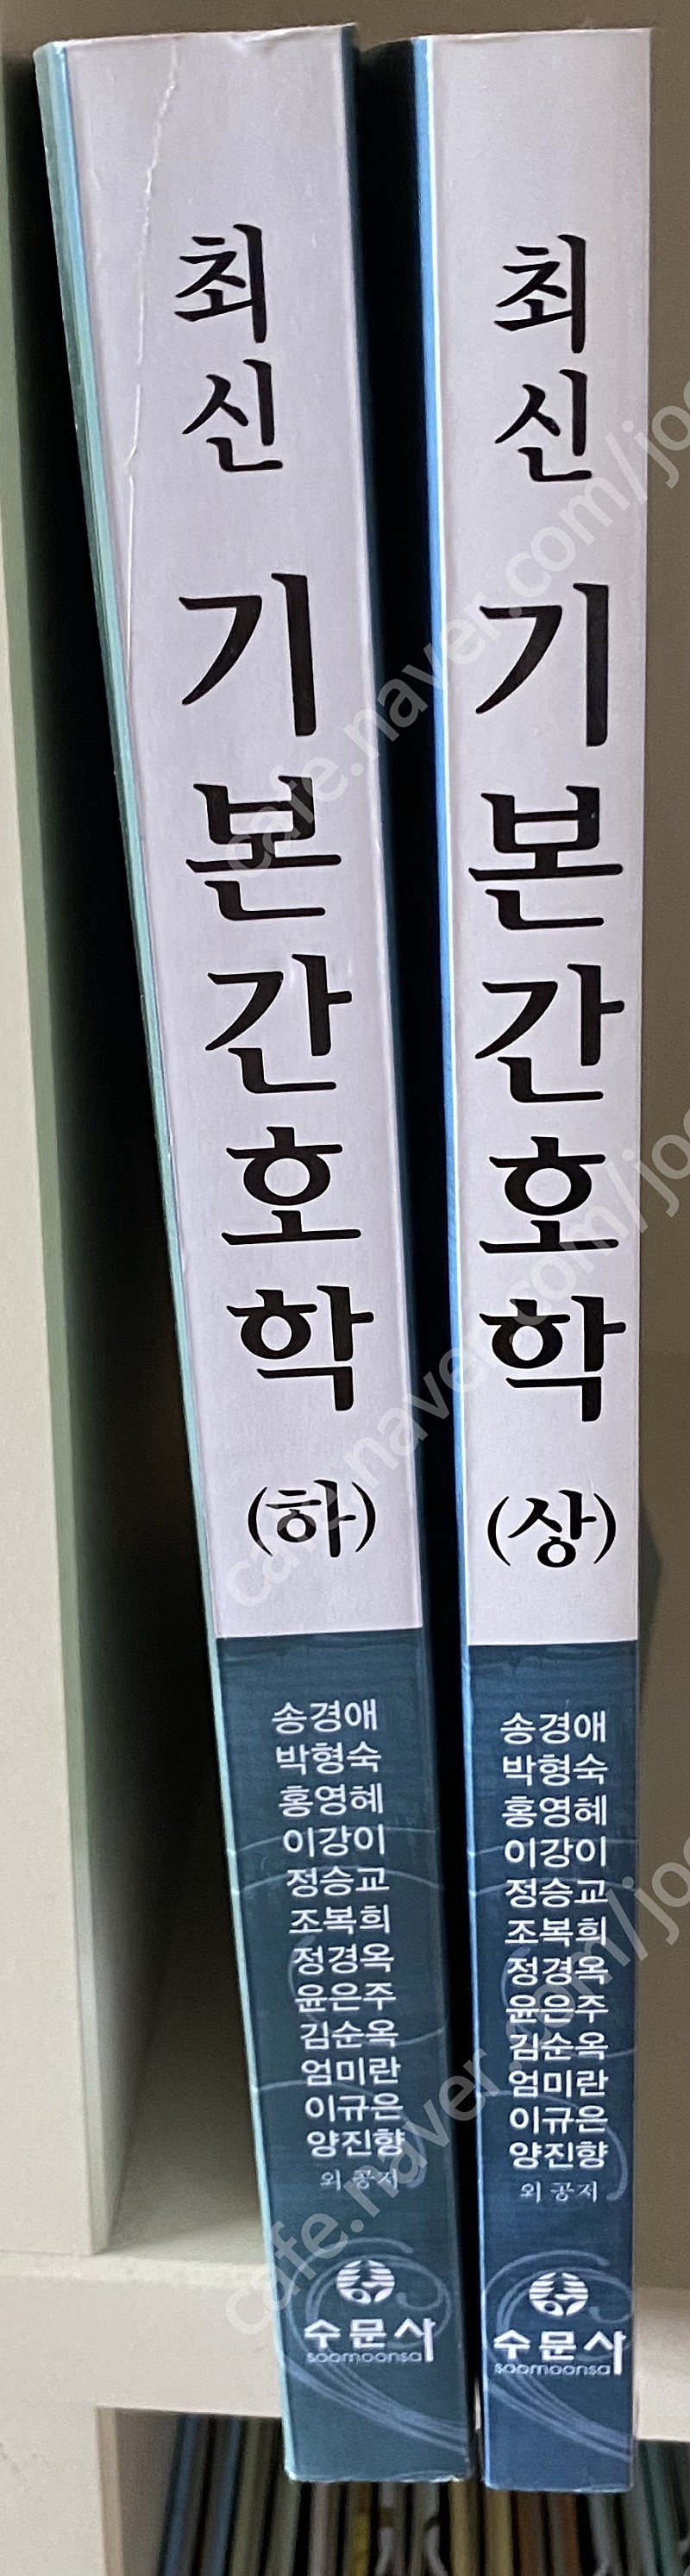 2013년 발행책- 수문사) 최신 기본간호학 상, 하 ( 송경애 외) / ﻿수문사) 기본간호 중재와 술기